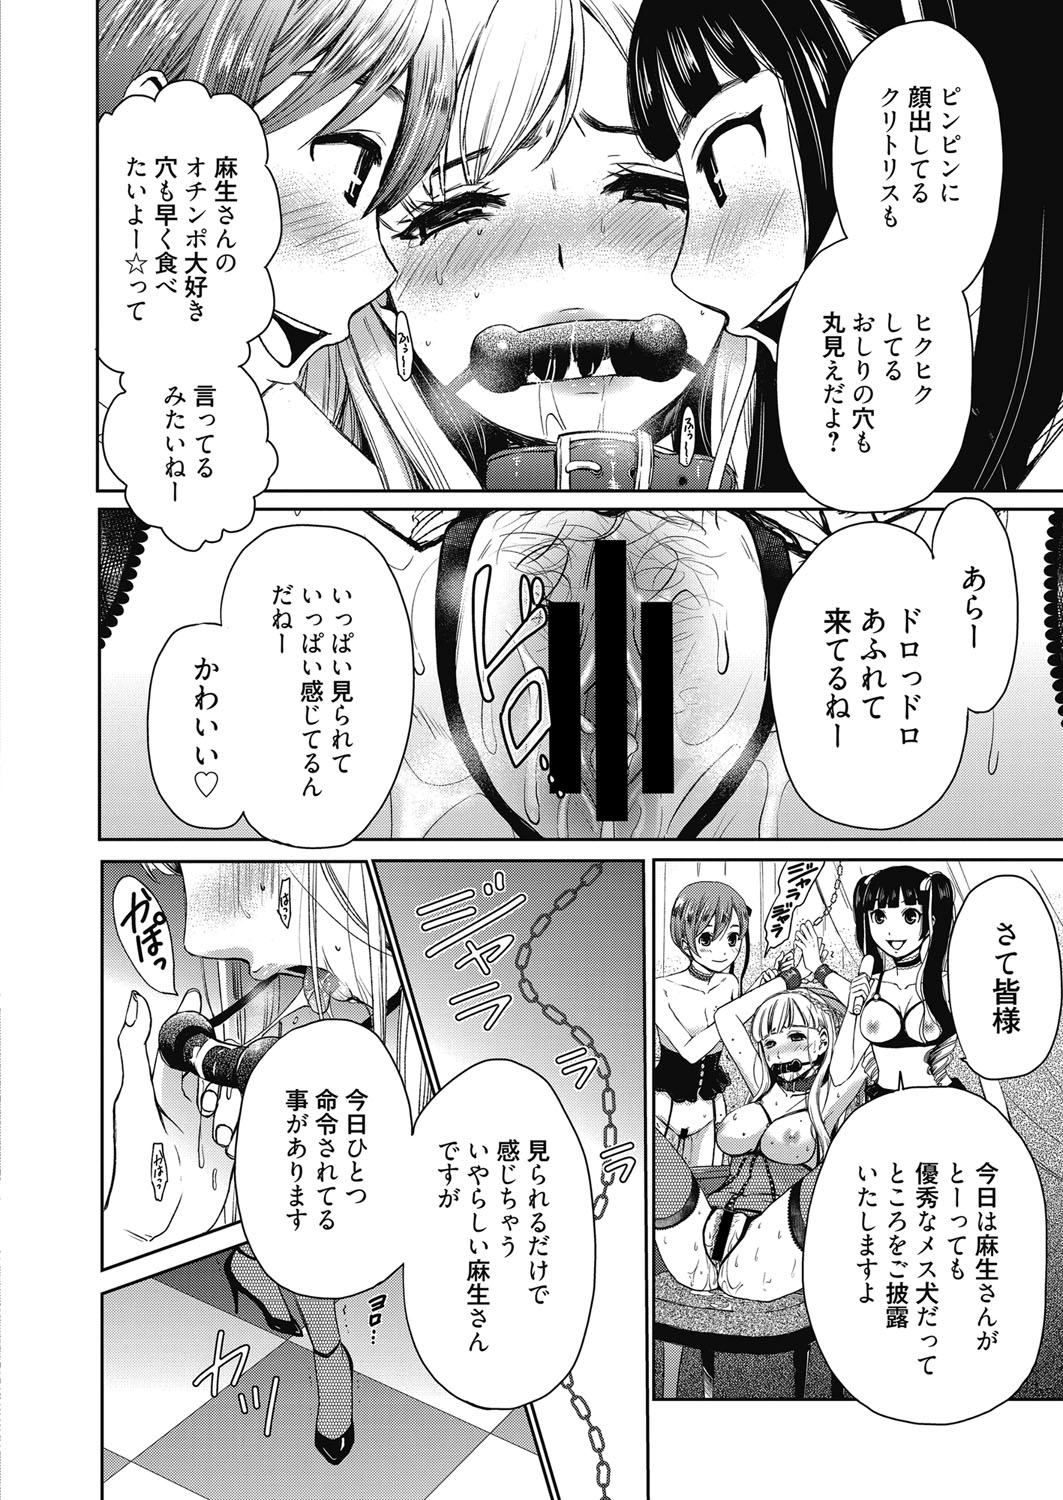 Web Manga Bangaichi Vol. 23 web 漫画ばんがいち Vol.23